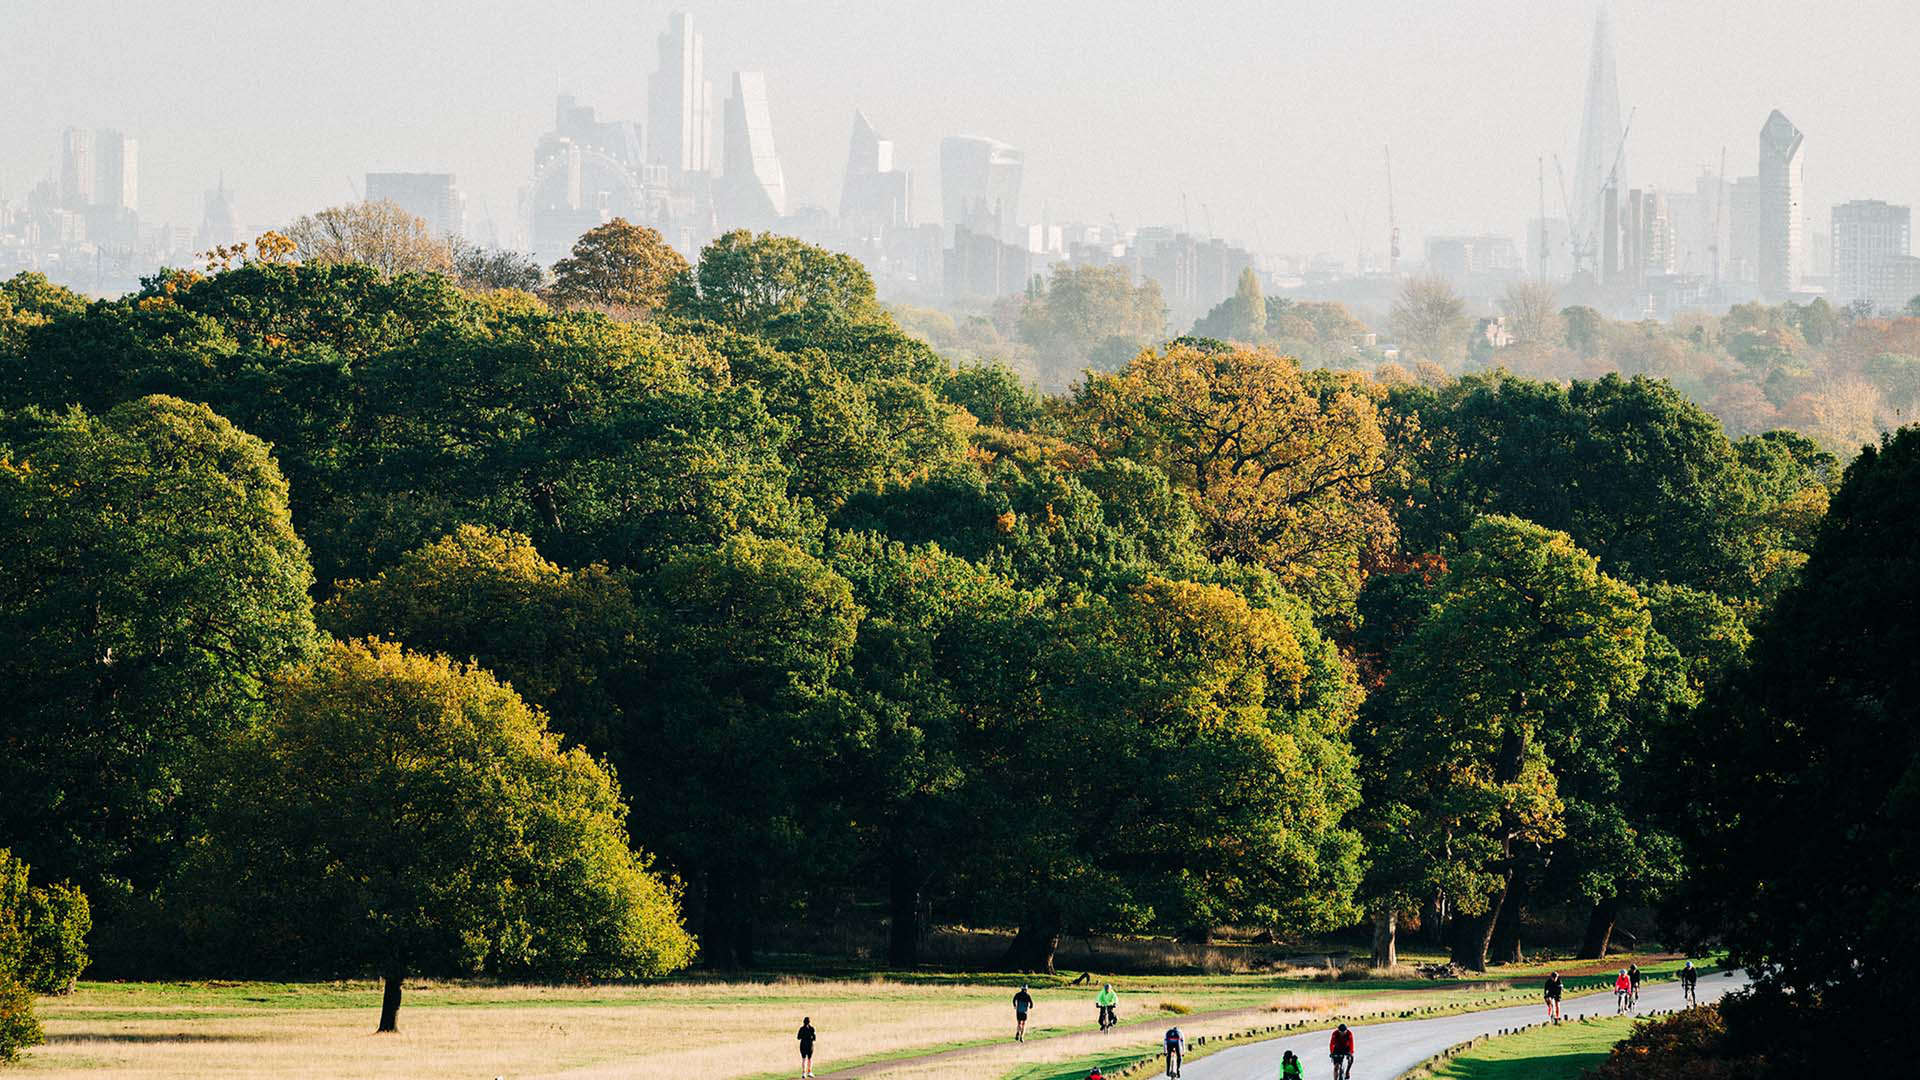 Richmond Park is London's largest royal park